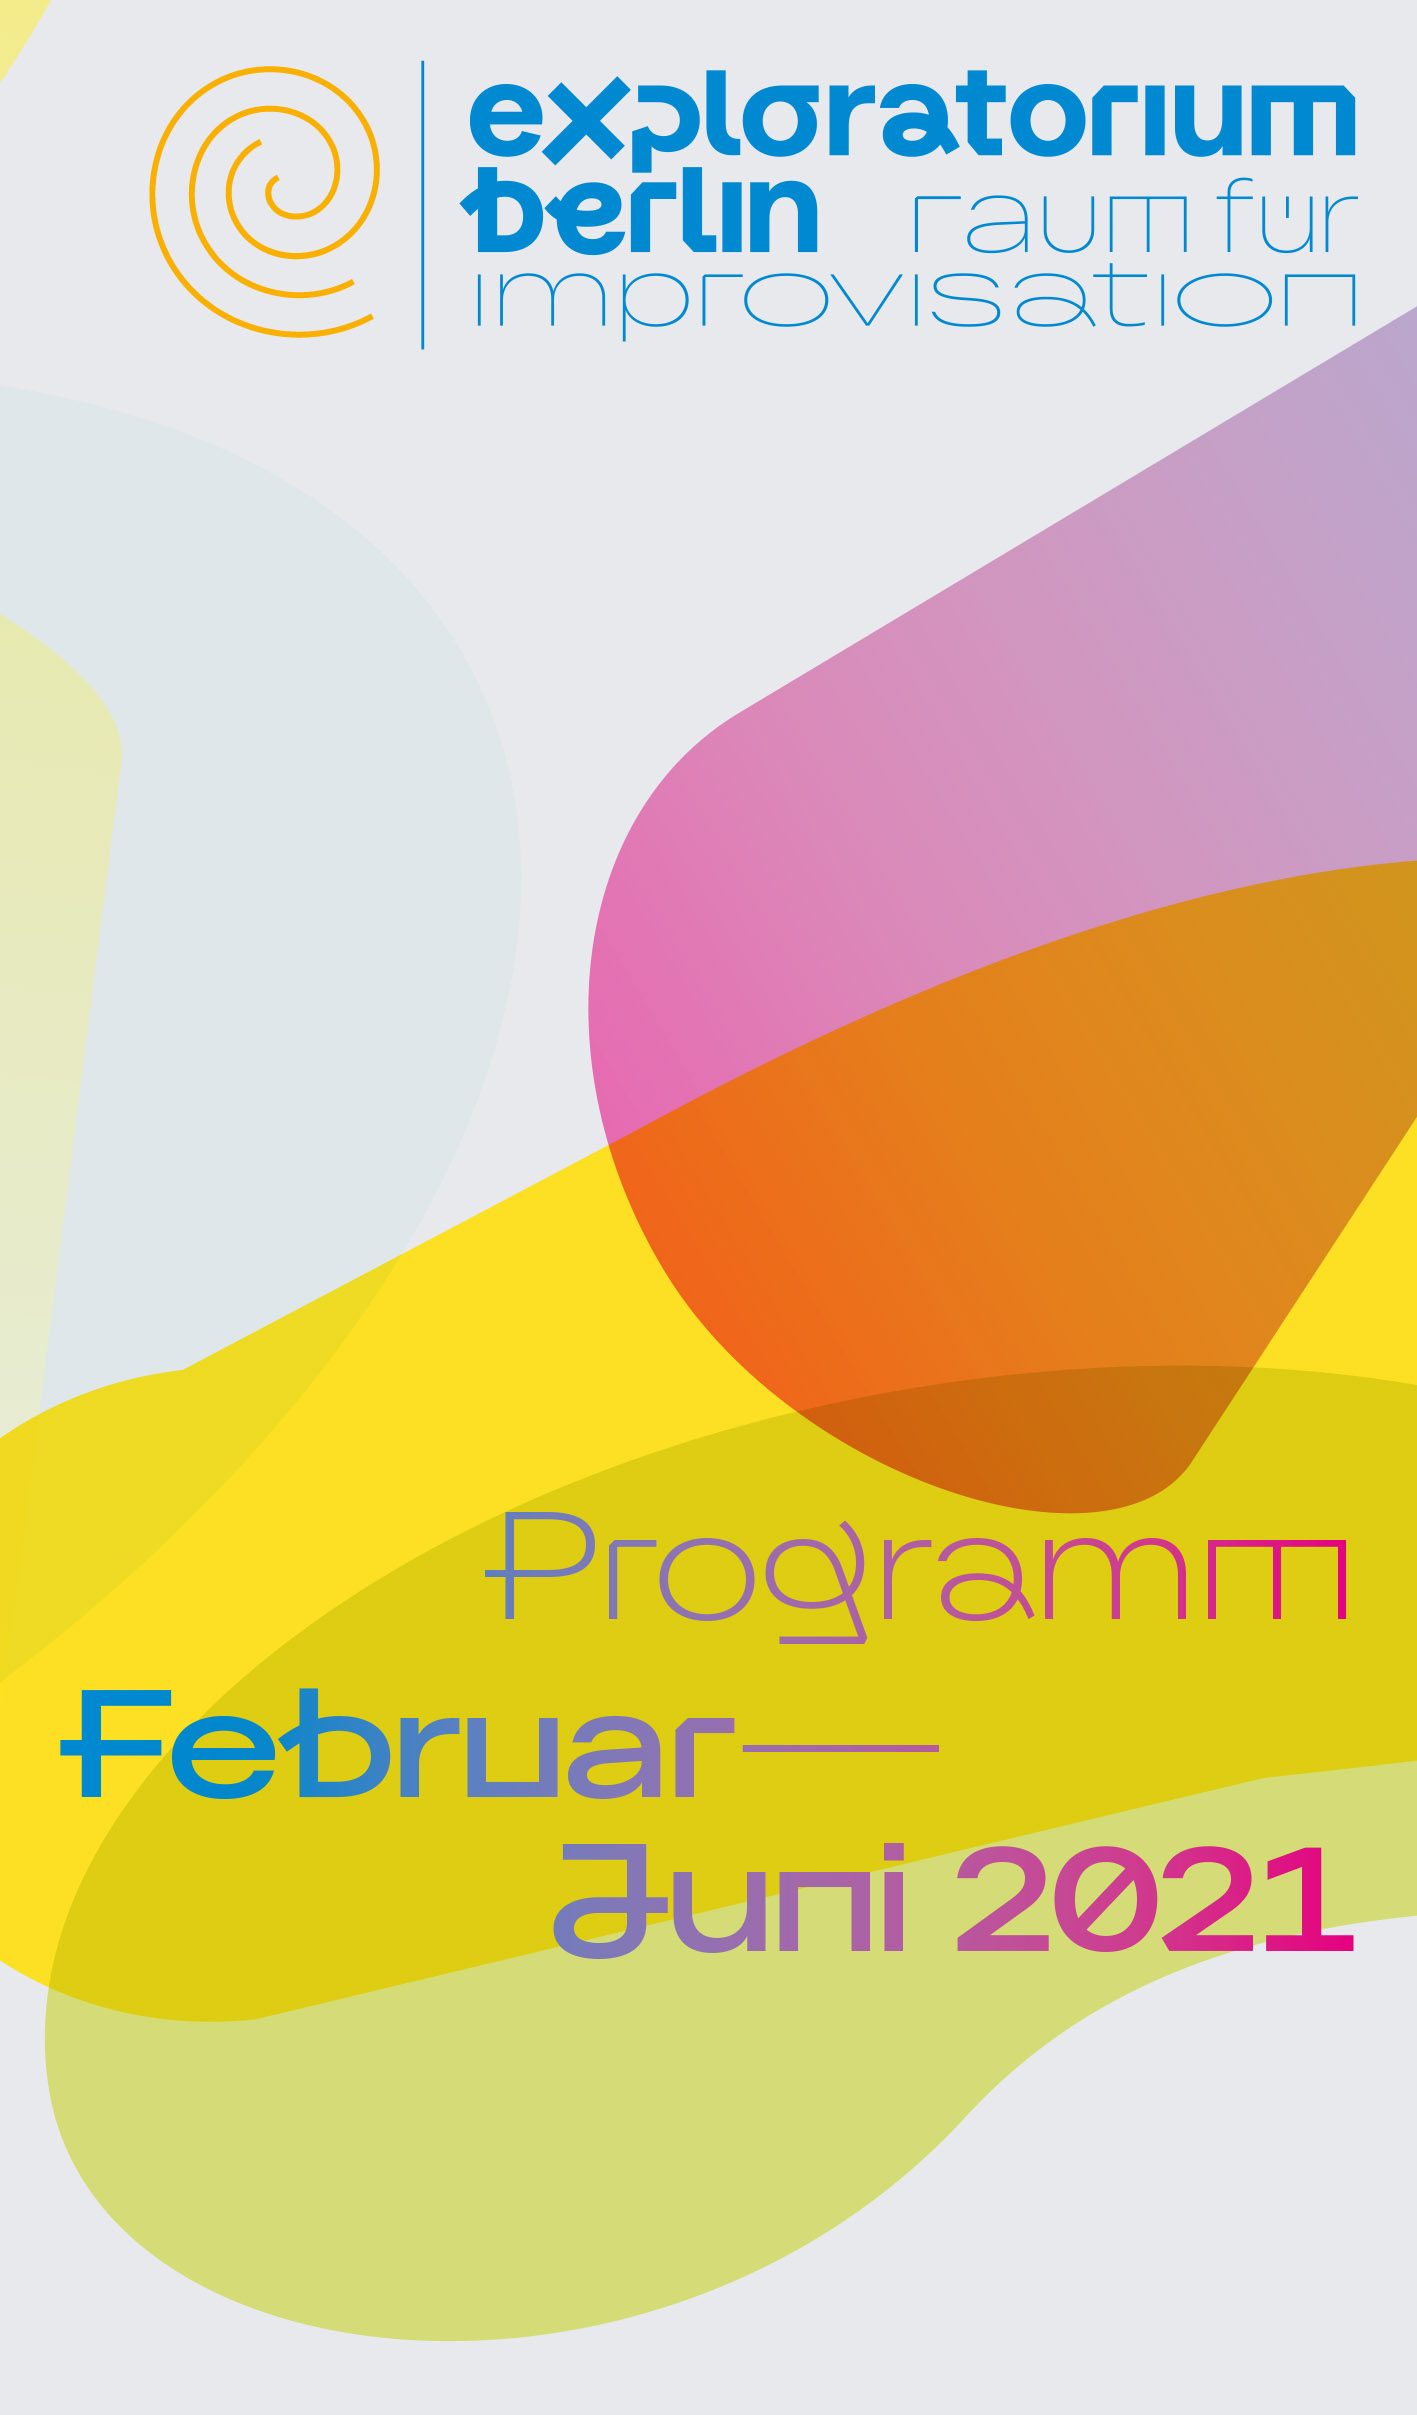 Programm Feb – Jun 2021